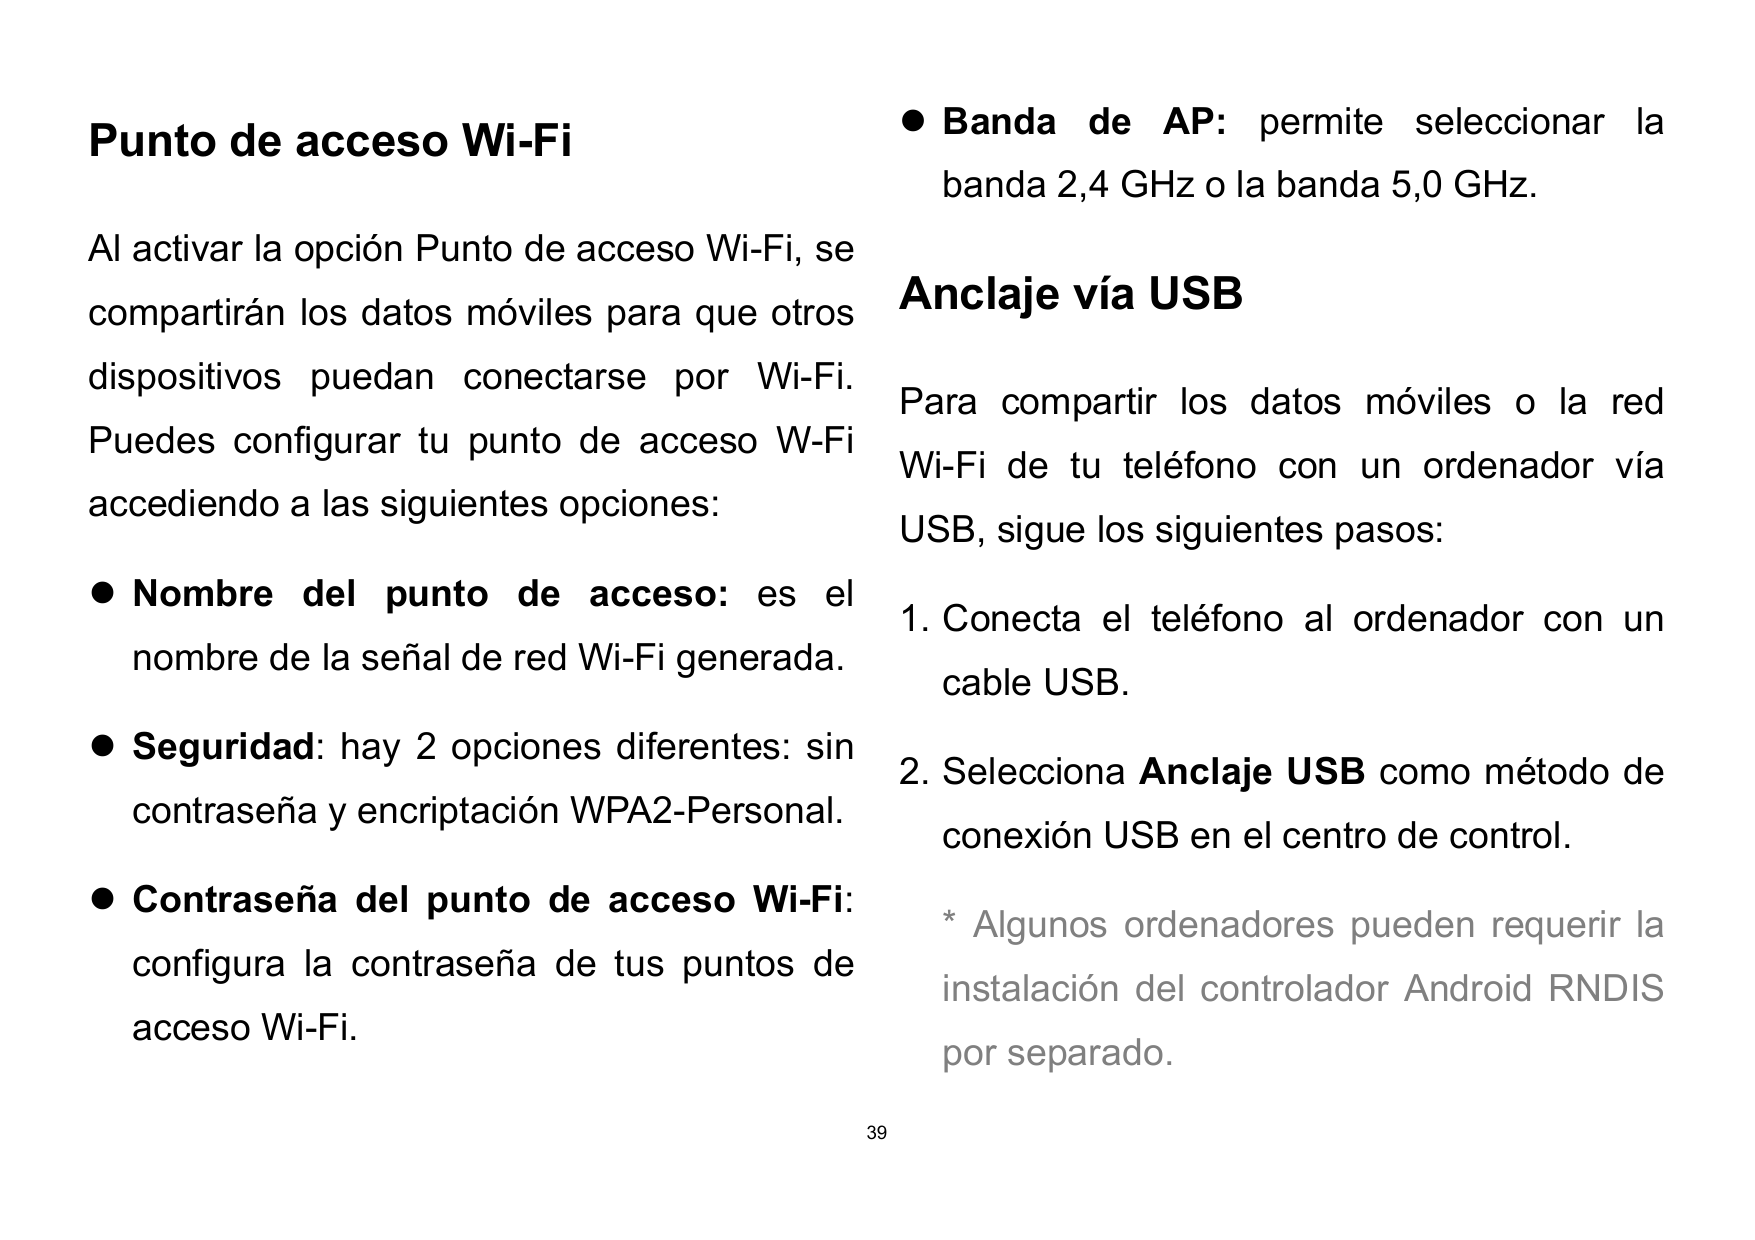  Banda de AP: permite seleccionar laPunto de acceso Wi-Fibanda 2,4 GHz o la banda 5,0 GHz.Al activar la opción Punto de acceso 